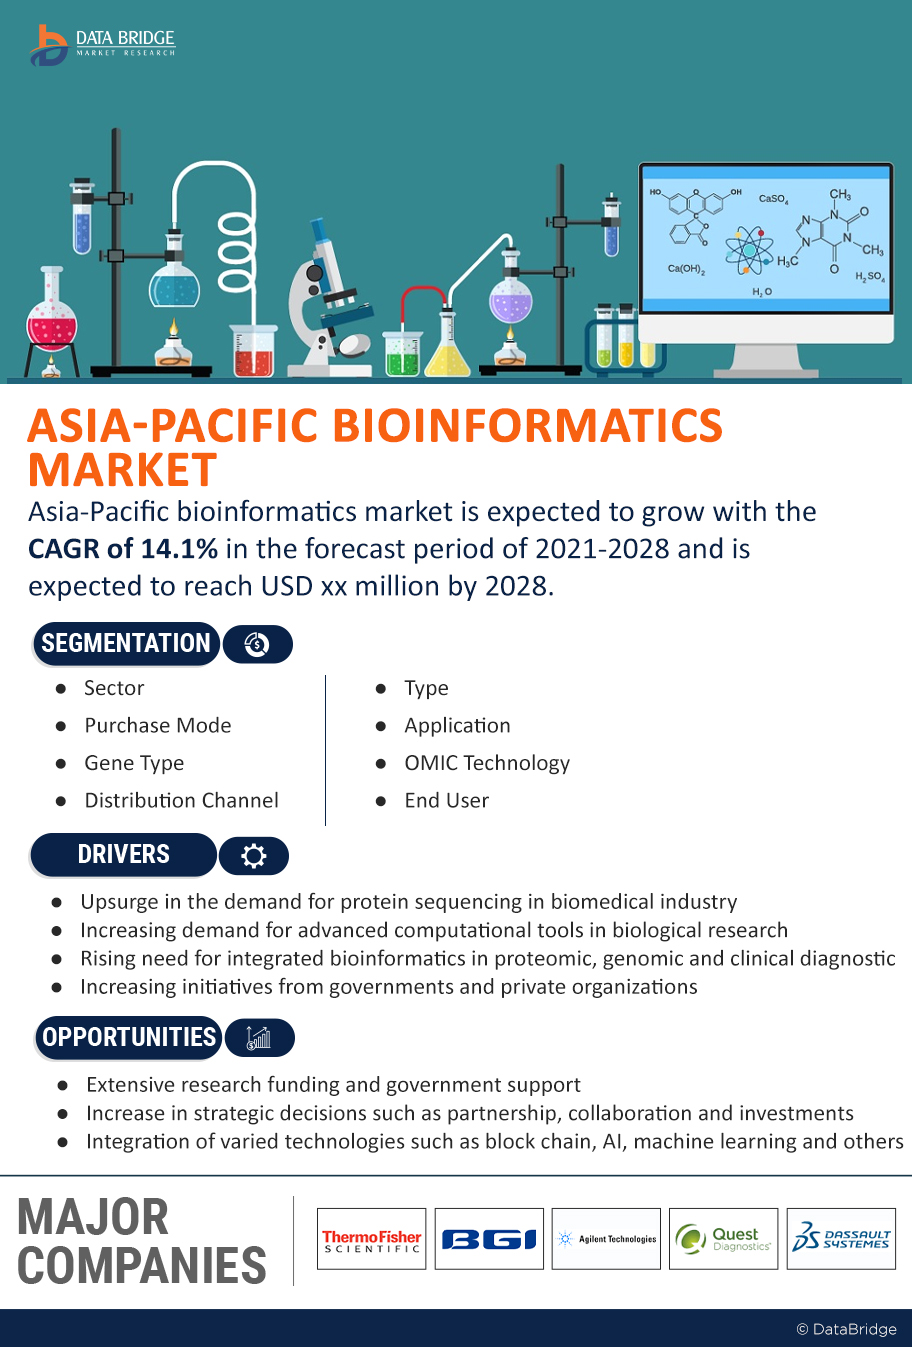 Asia-Pacific Bioinformatics Market